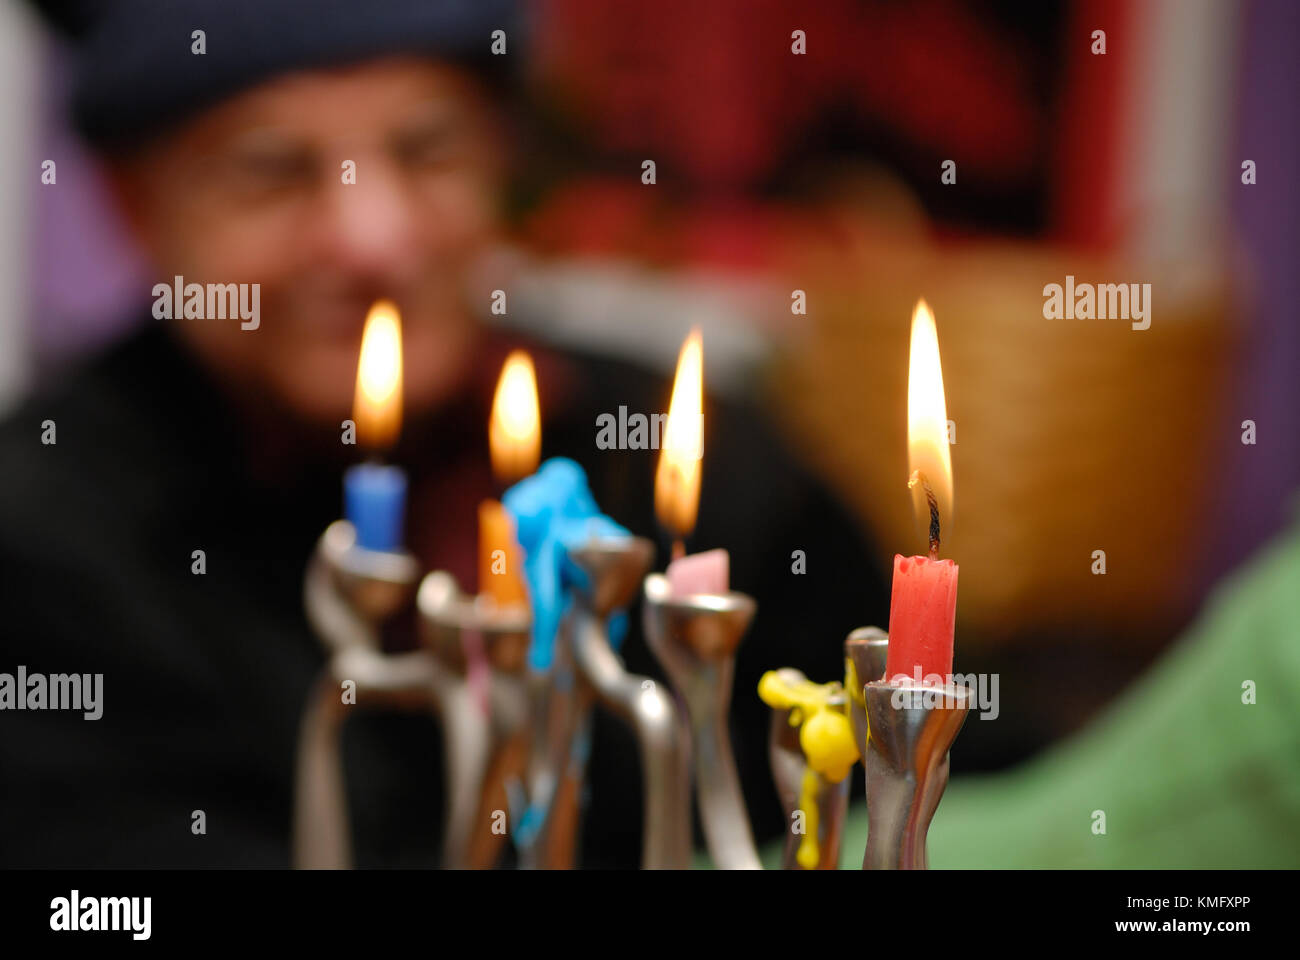 Hanukkah menorah sfondo. closeup di candele accese durante la celebrazione di Hanukkah, una festa ebraica, vecchio uomo guarda in background. Foto Stock